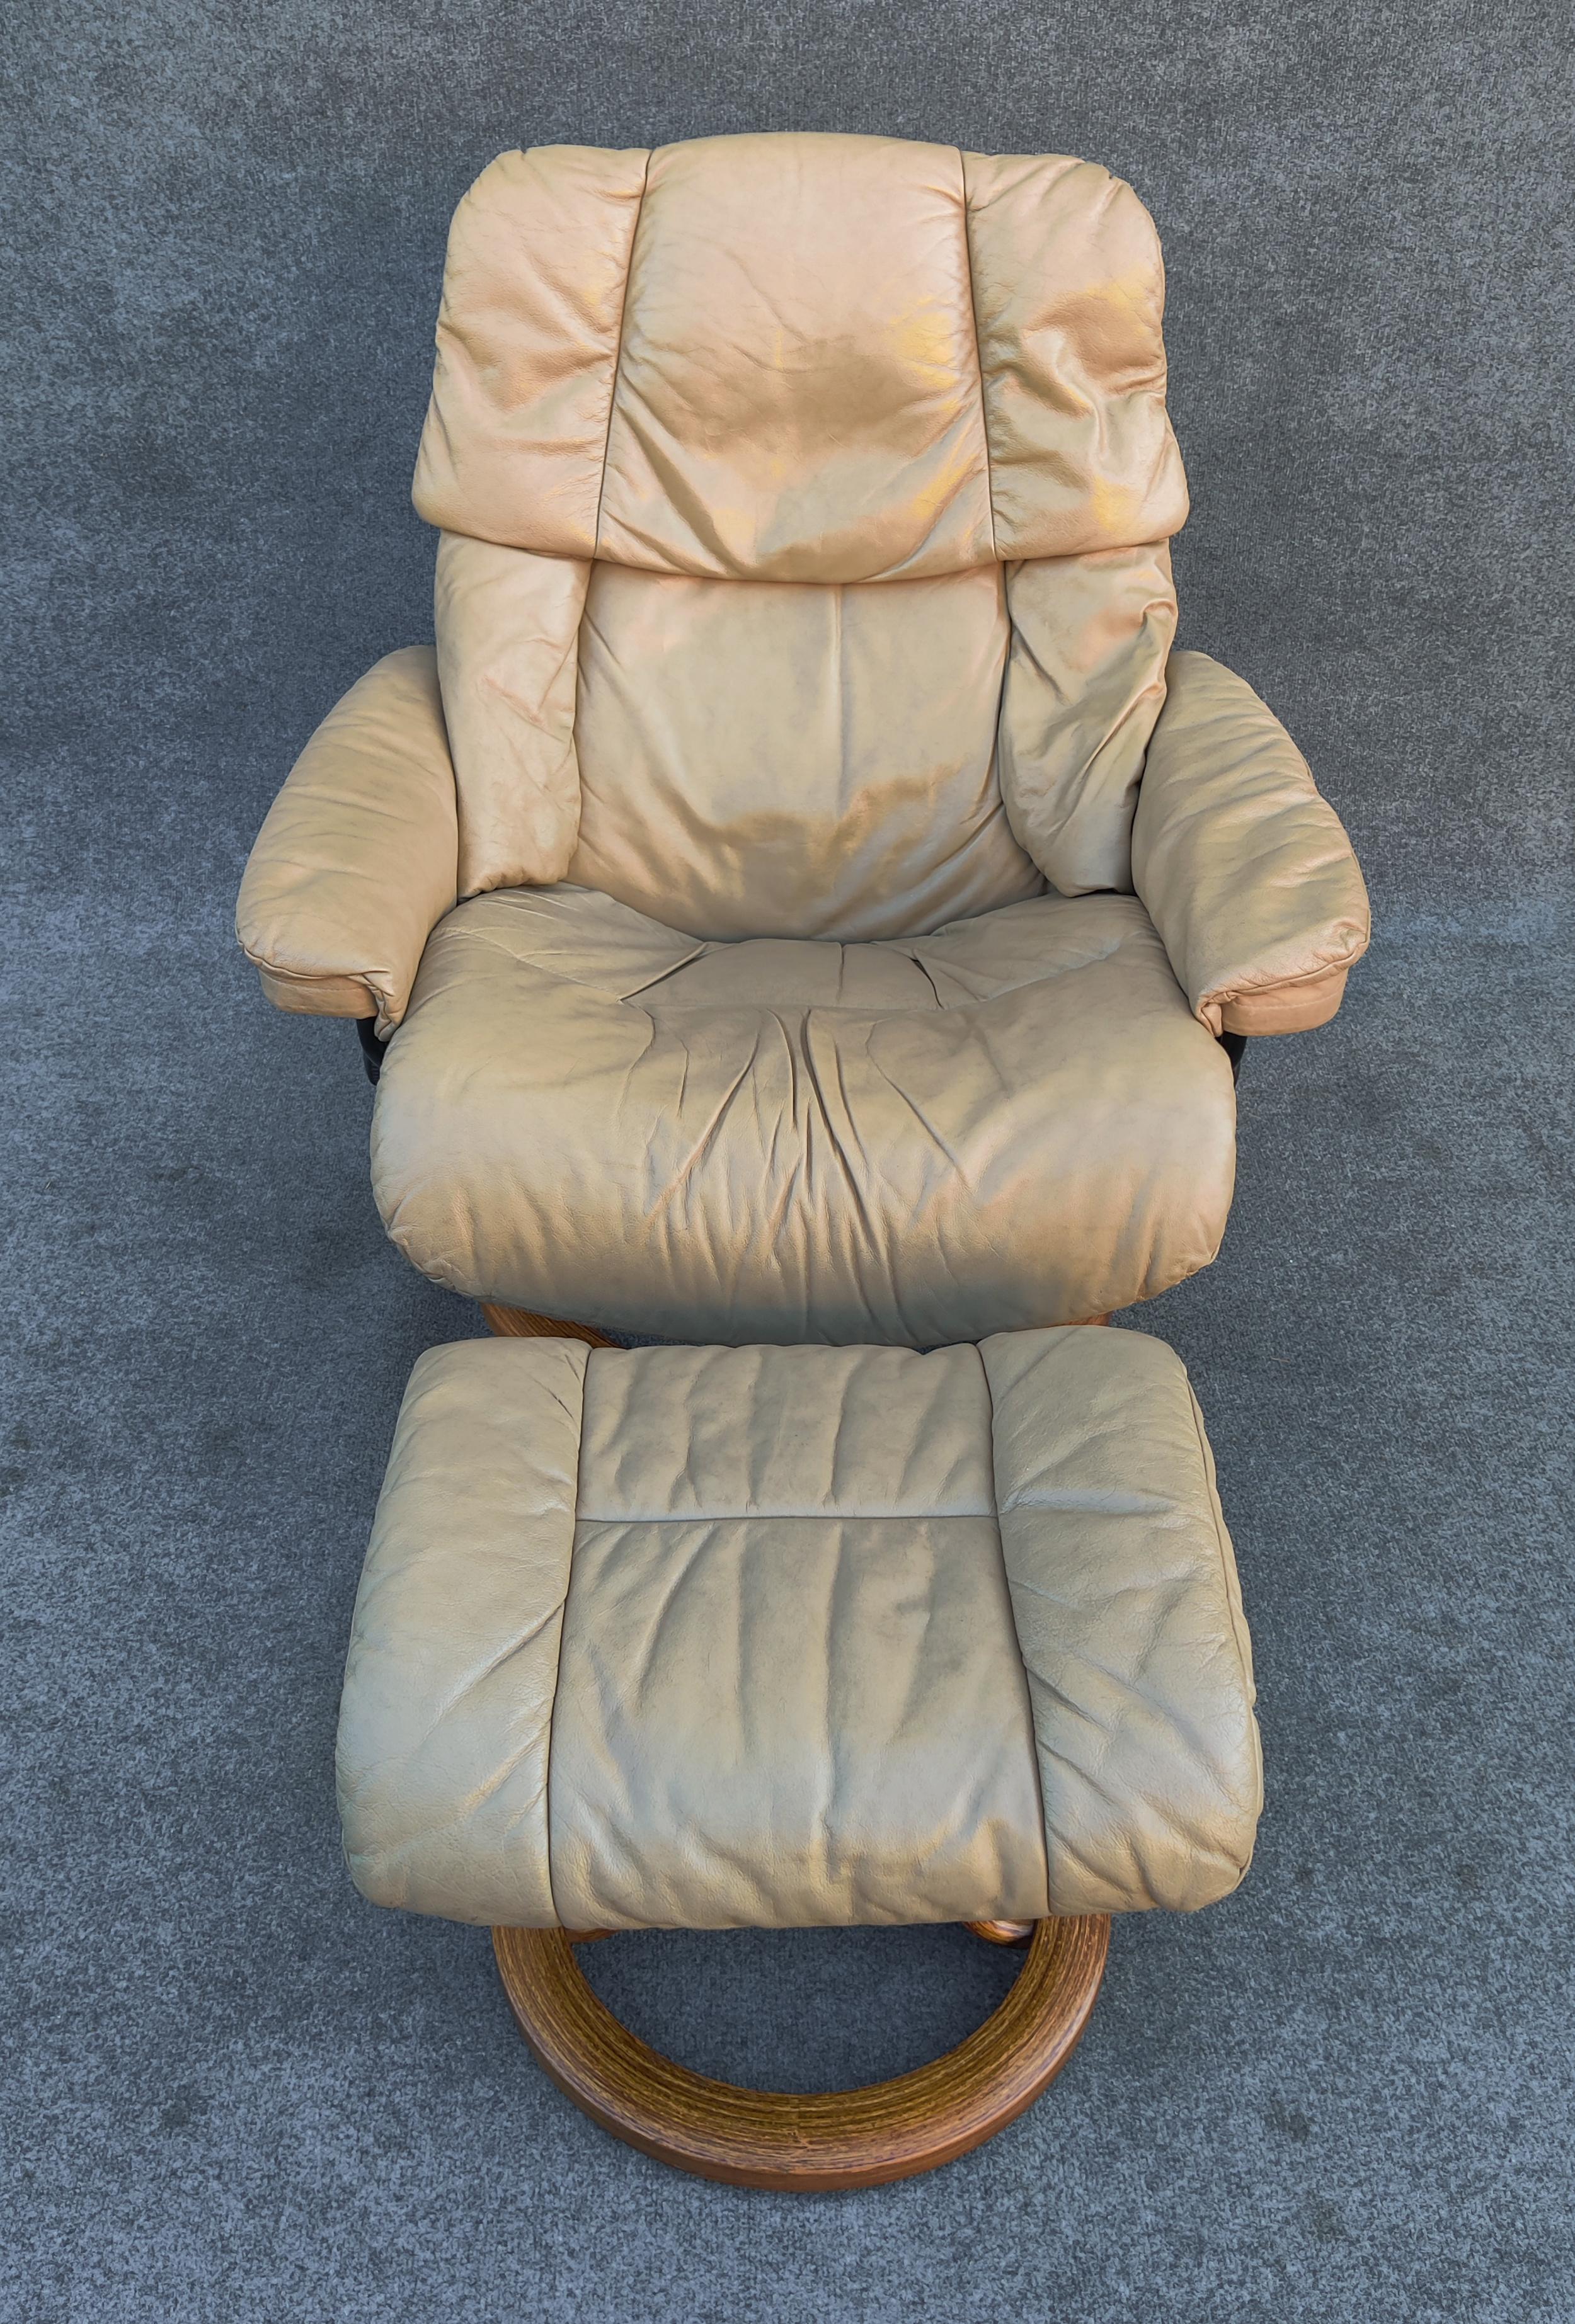 Un fauteuil inclinable et un ottoman de style scandinave par Ekornes, leur marque Stressless. Avec des bases en bois de teck, un cadre en métal et un revêtement en cuir véritable, il s'agit d'un confortable fauteuil inclinable en cuir de couleur